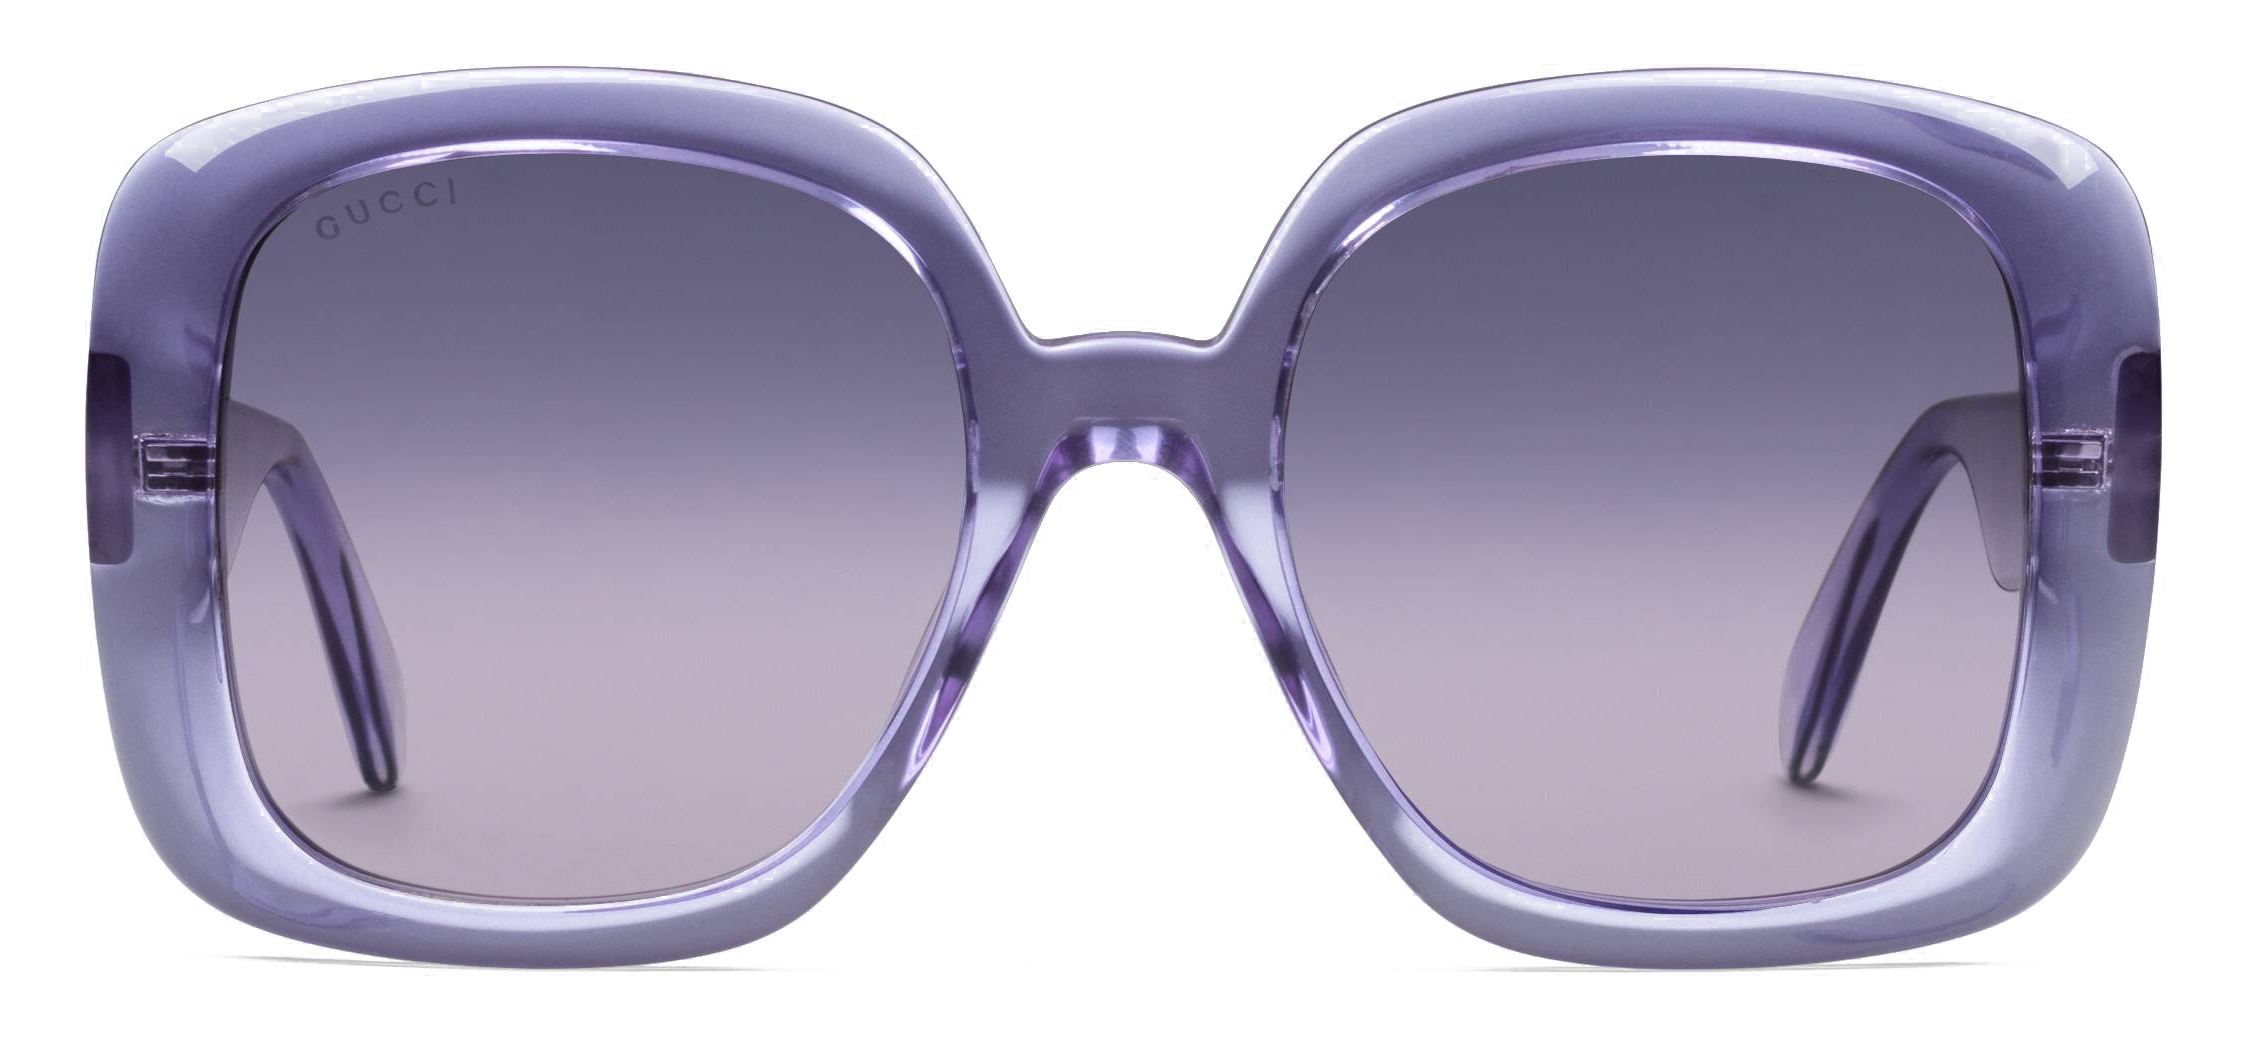 Gucci - Square Sunglasses - Purple 